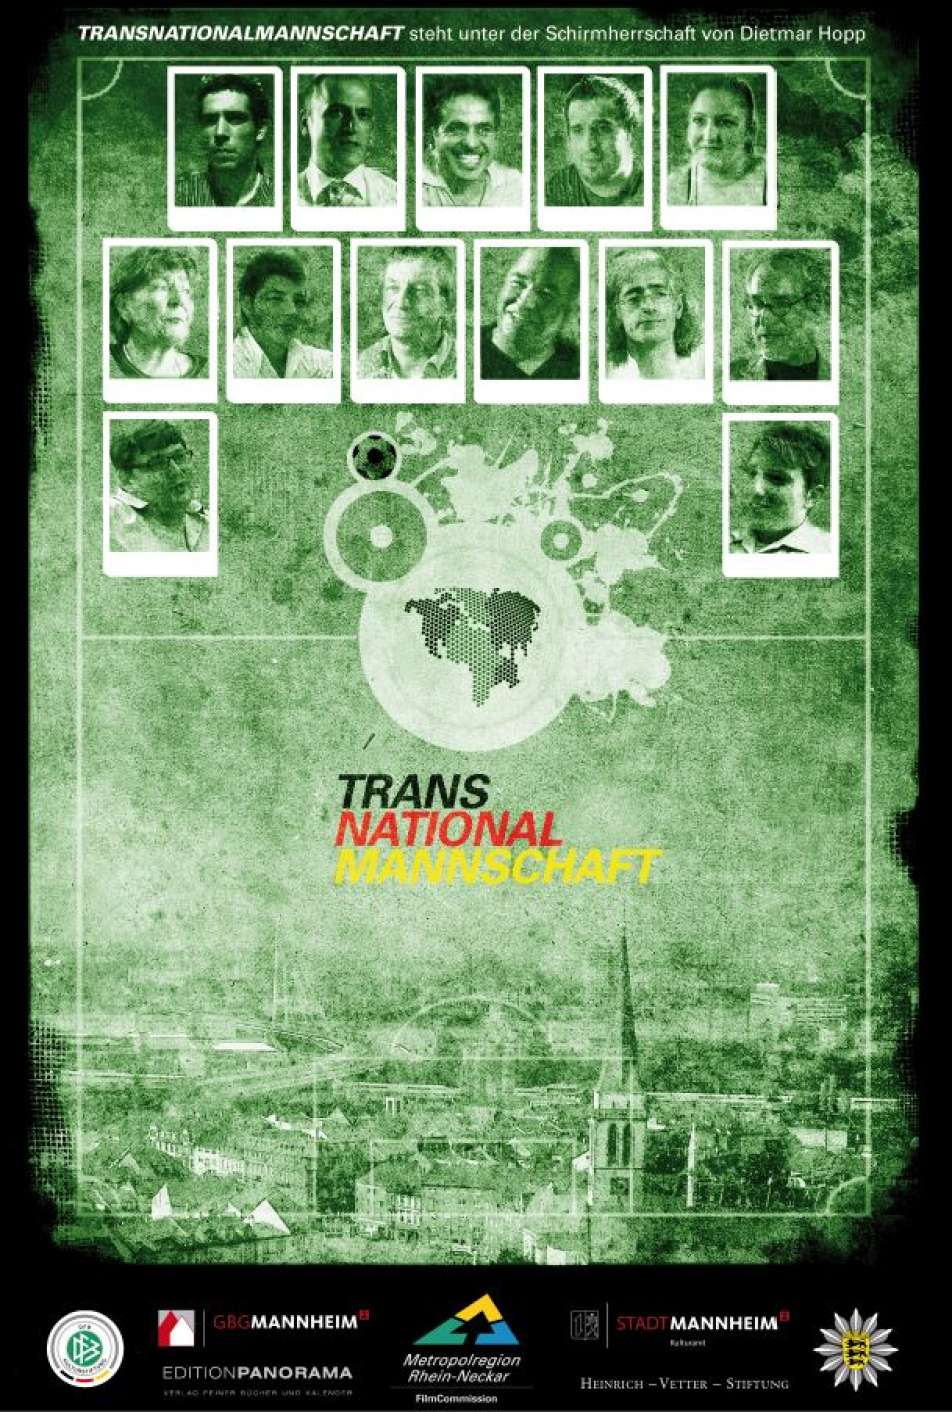 farbiges Filmplakat des Films "TRANSNATIONALMANNSCHAFT", das Portraitfotos von Menschen auf einem Fußballplatz zeigt